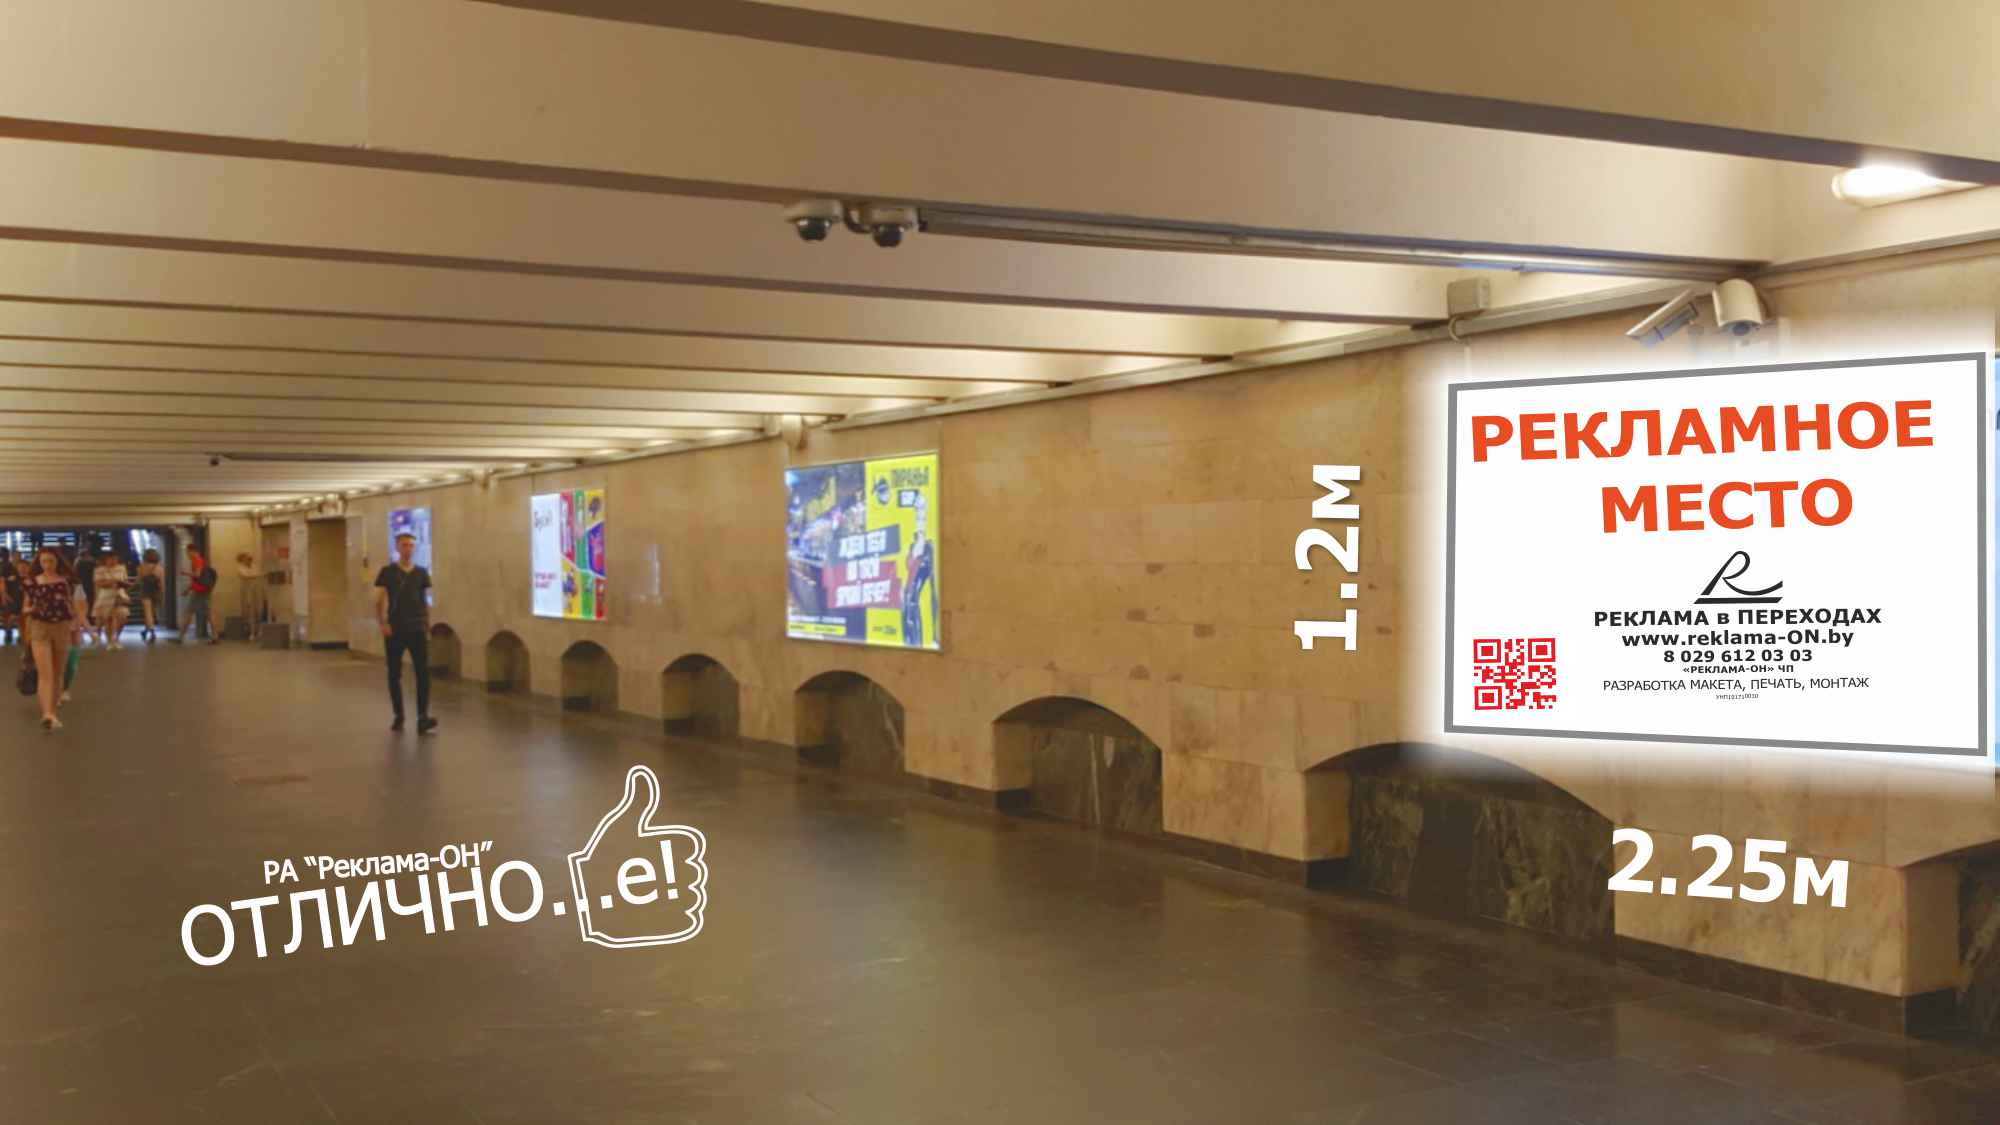 Ультраяркий световой лайтбокс на станции метро Немига (переход) reklama-on.by